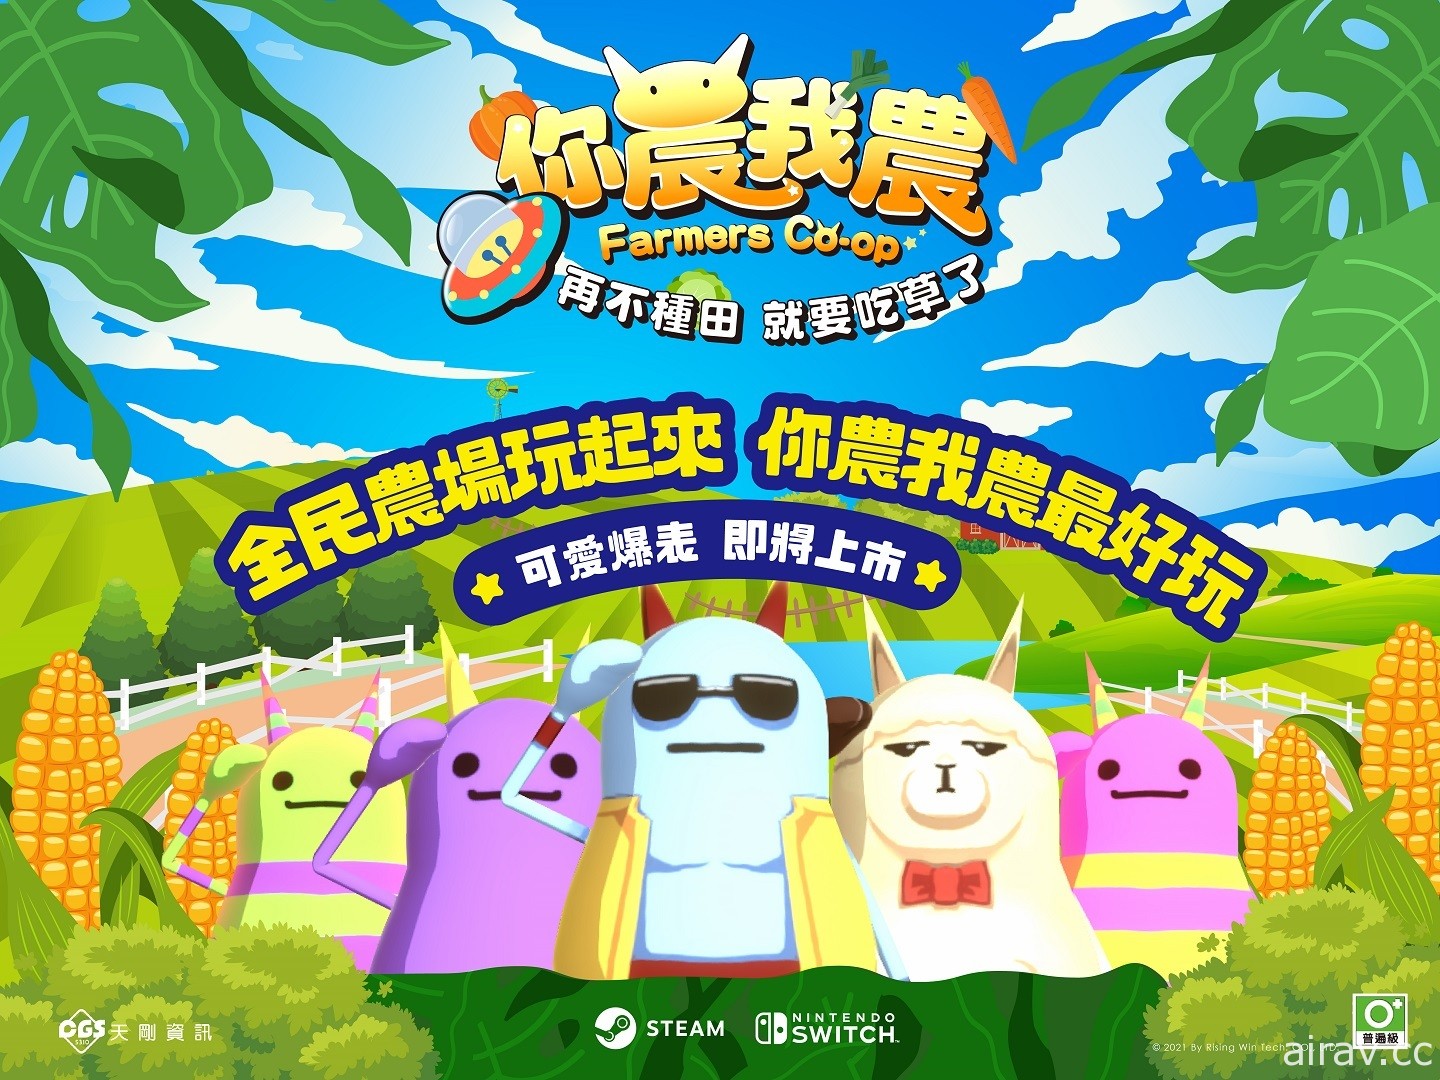 台灣自製多人同樂益智遊戲《你農我農》9 月全球同步發行